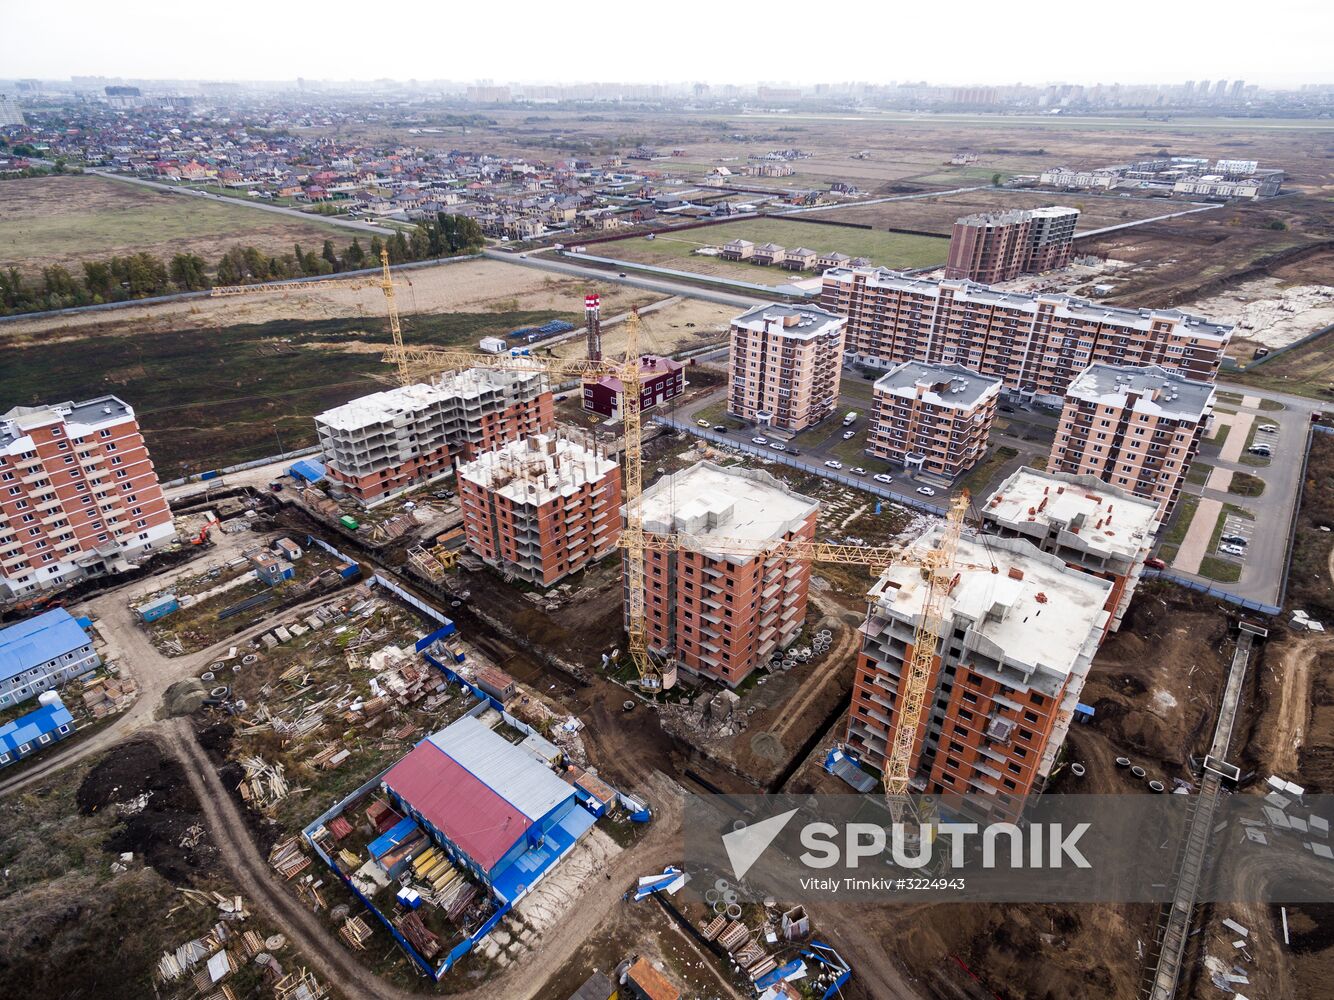 Housing construction in Krasnodar